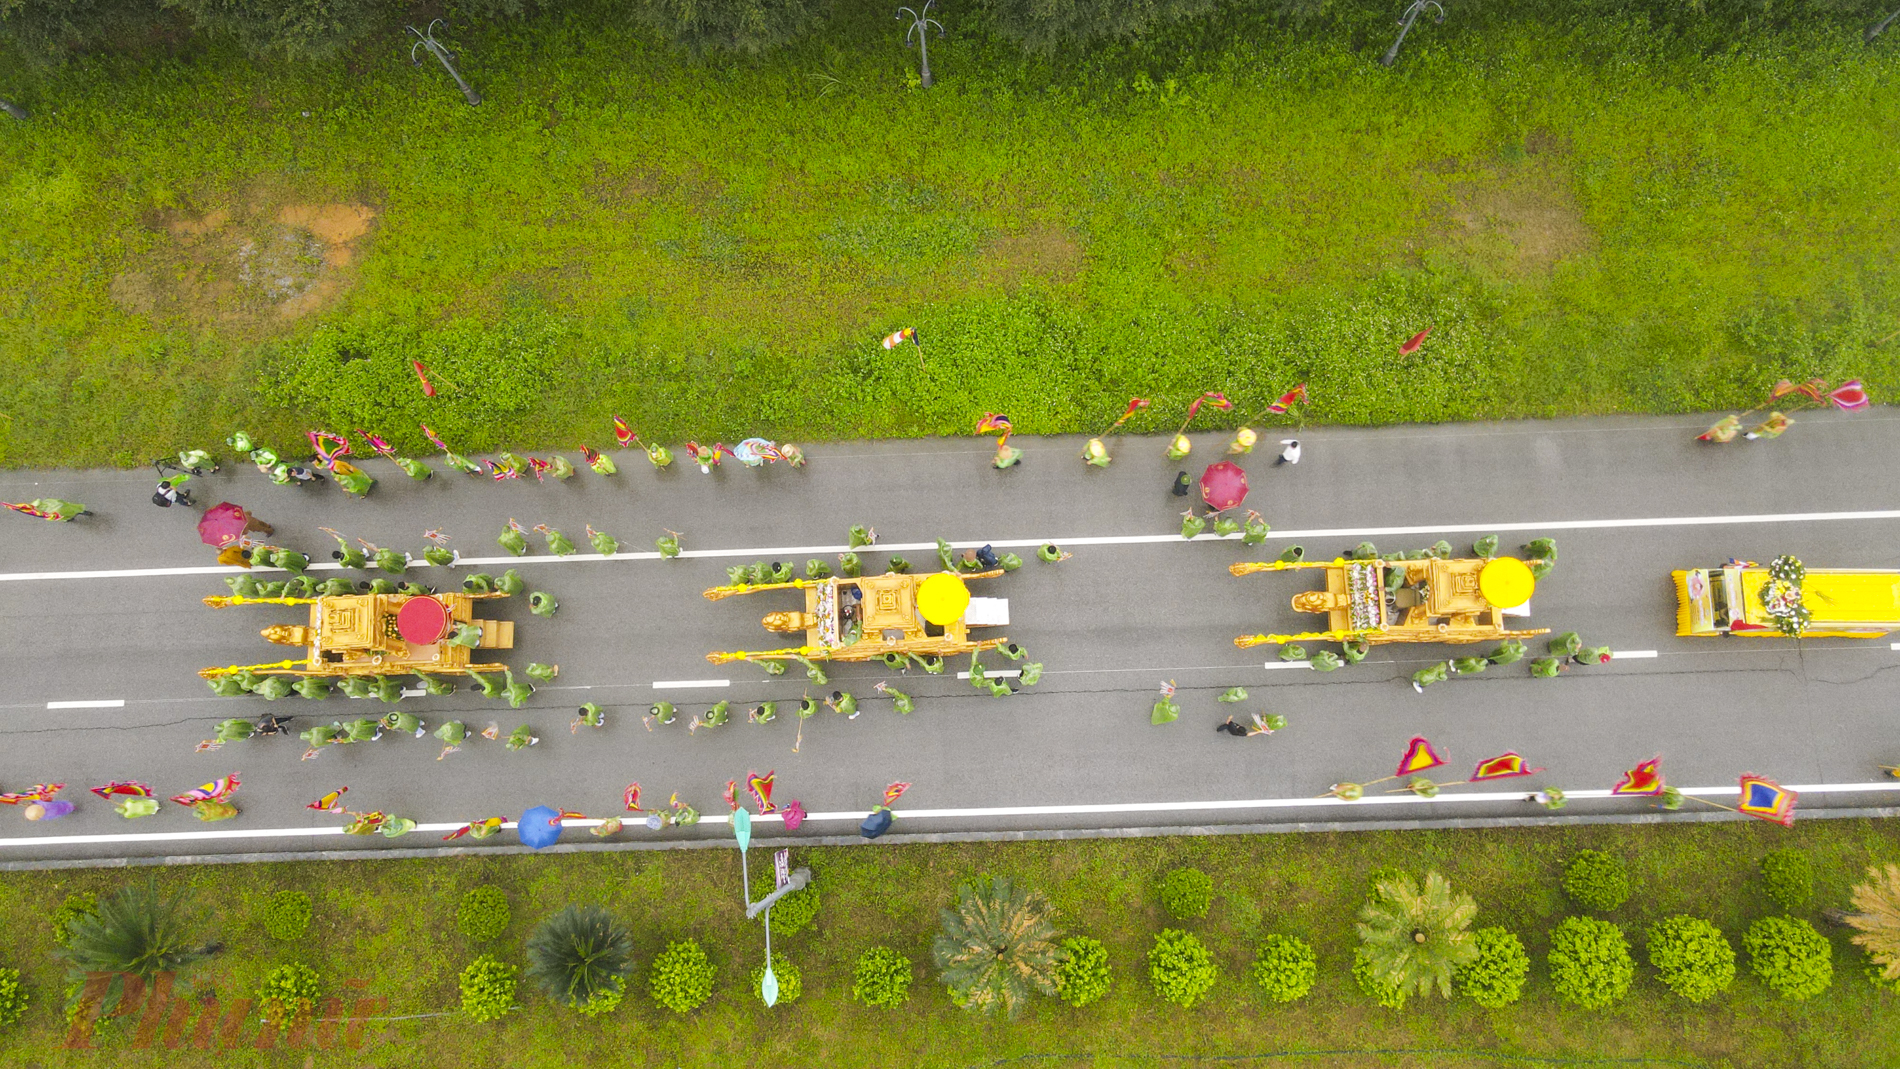 3 xe hoa nối tiếp nhau bao gồm: xe chở xá lợi Phật, xe chở pháp (mộc kinh) và xe chở tăng (di ảnh) của cụ Nguyễn Minh Không.